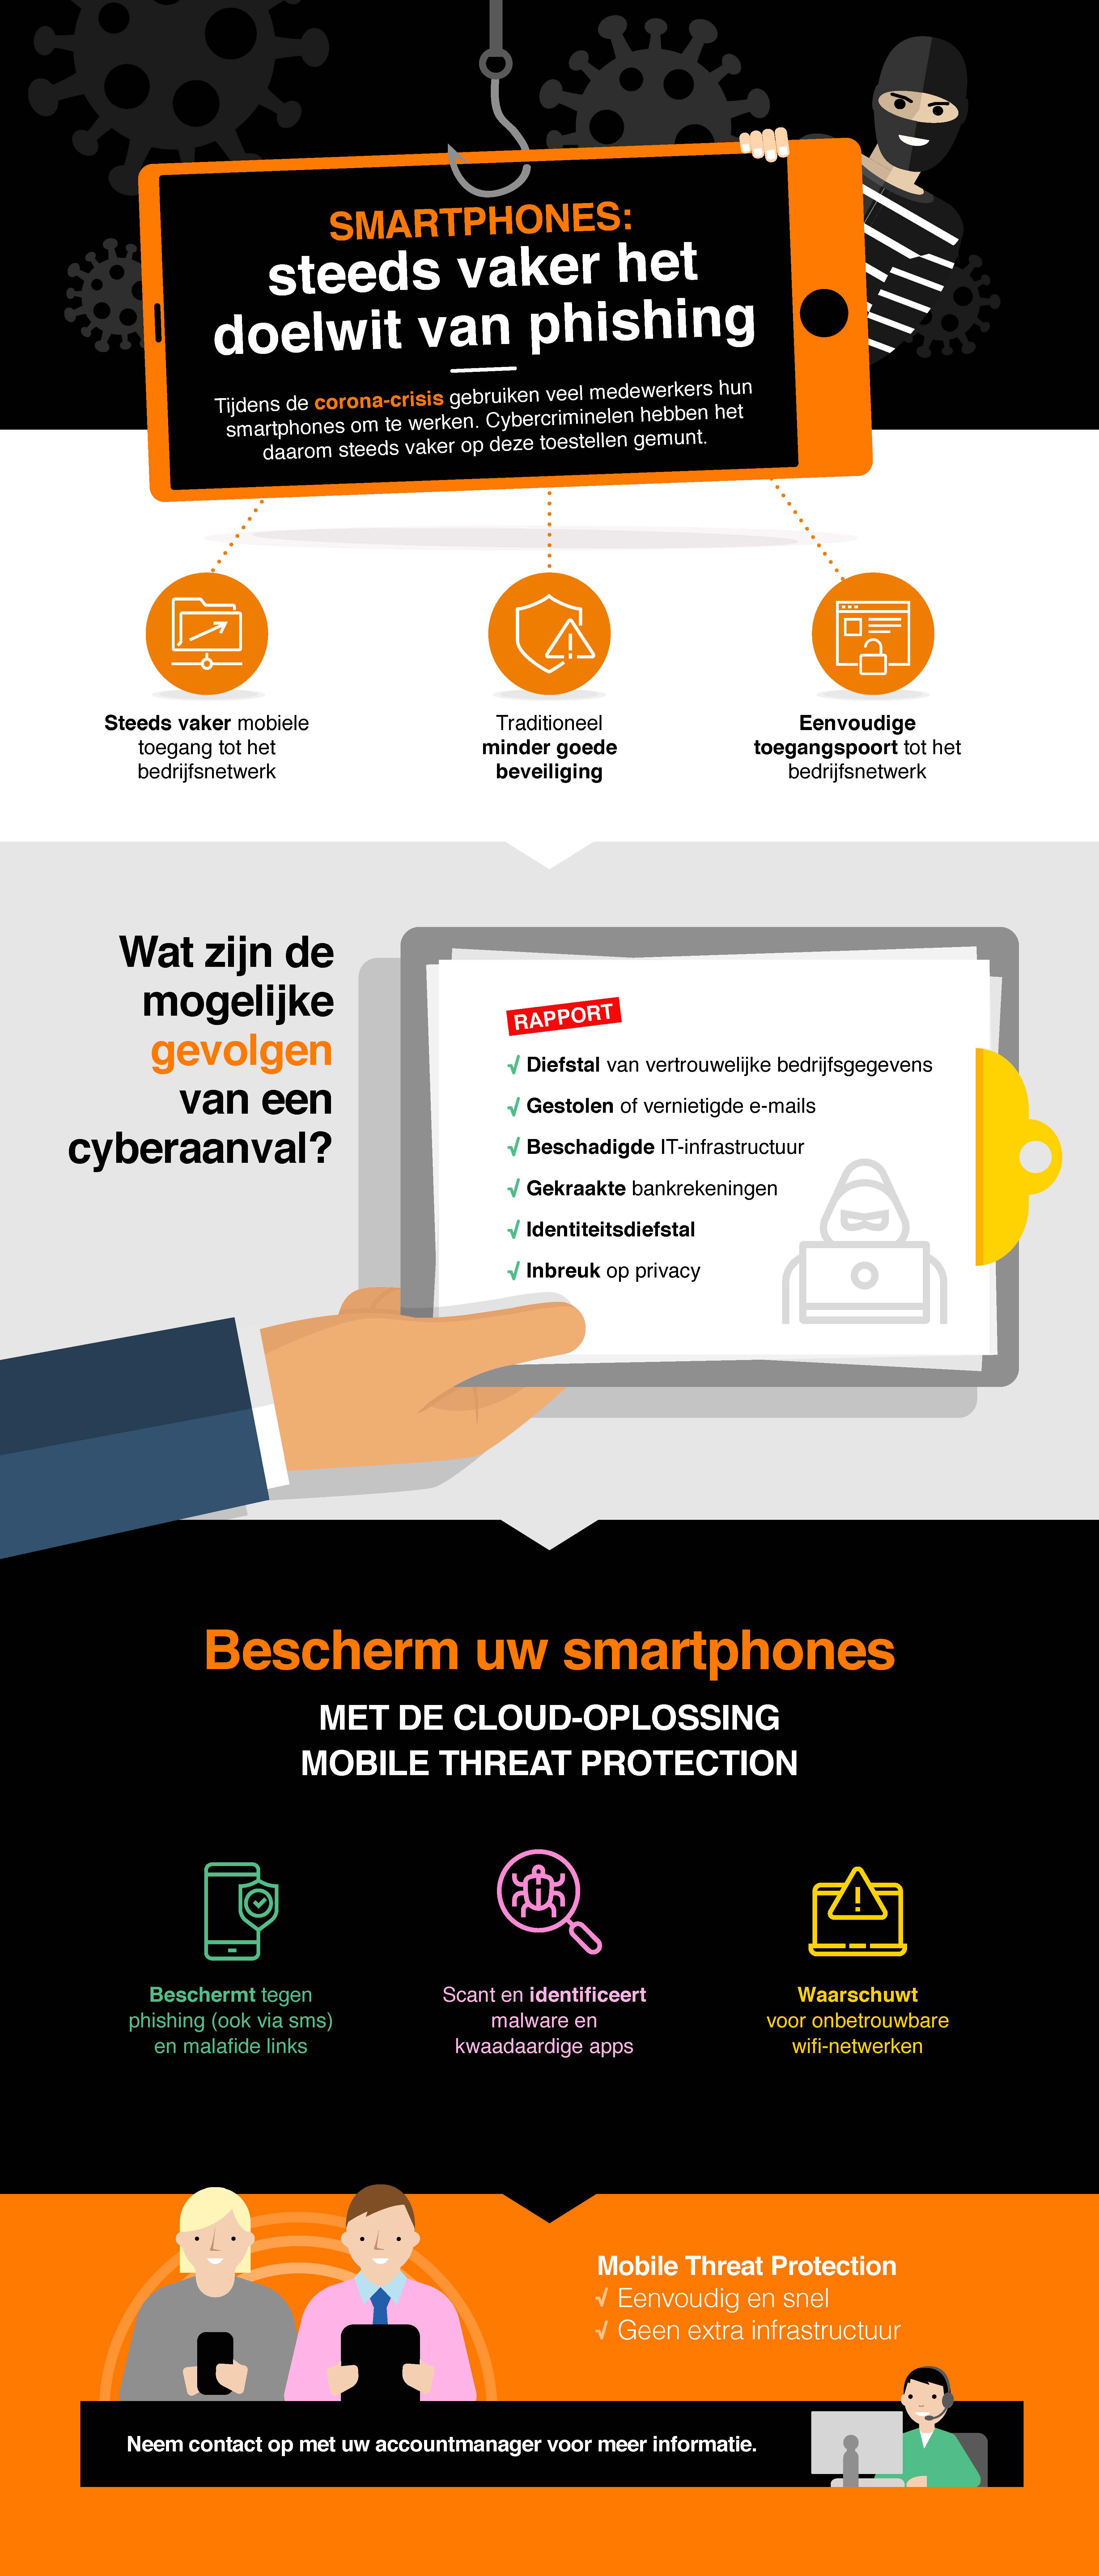 Bescherm uw smartphones tegen phishing